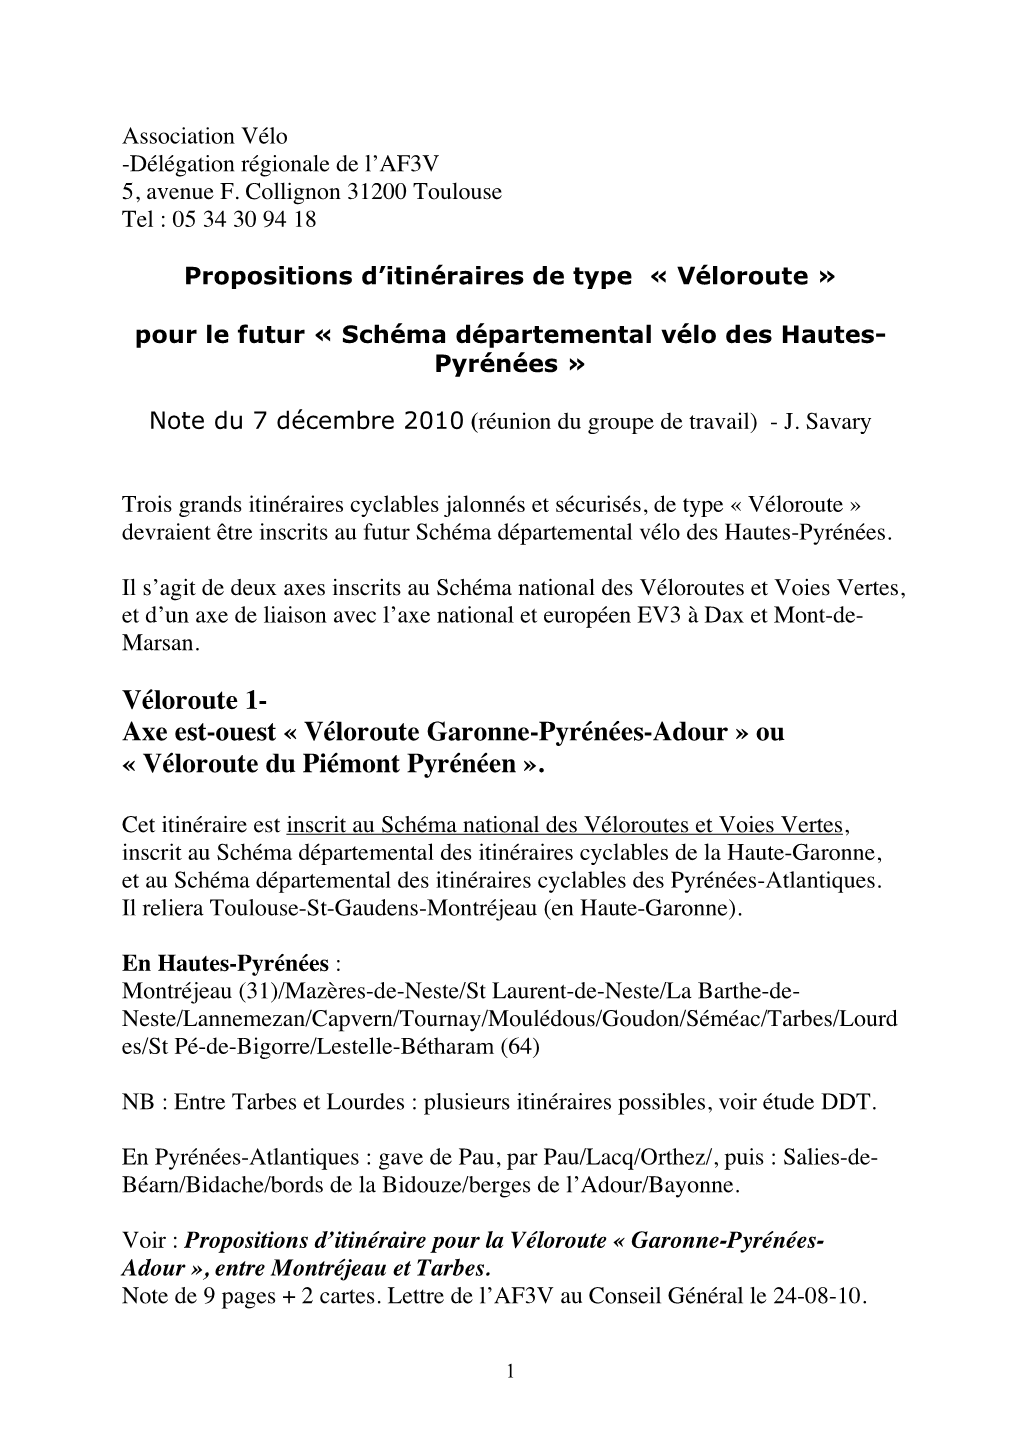 Véloroute Garonne-Pyrénées-Adour » Ou « Véloroute Du Piémont Pyrénéen »